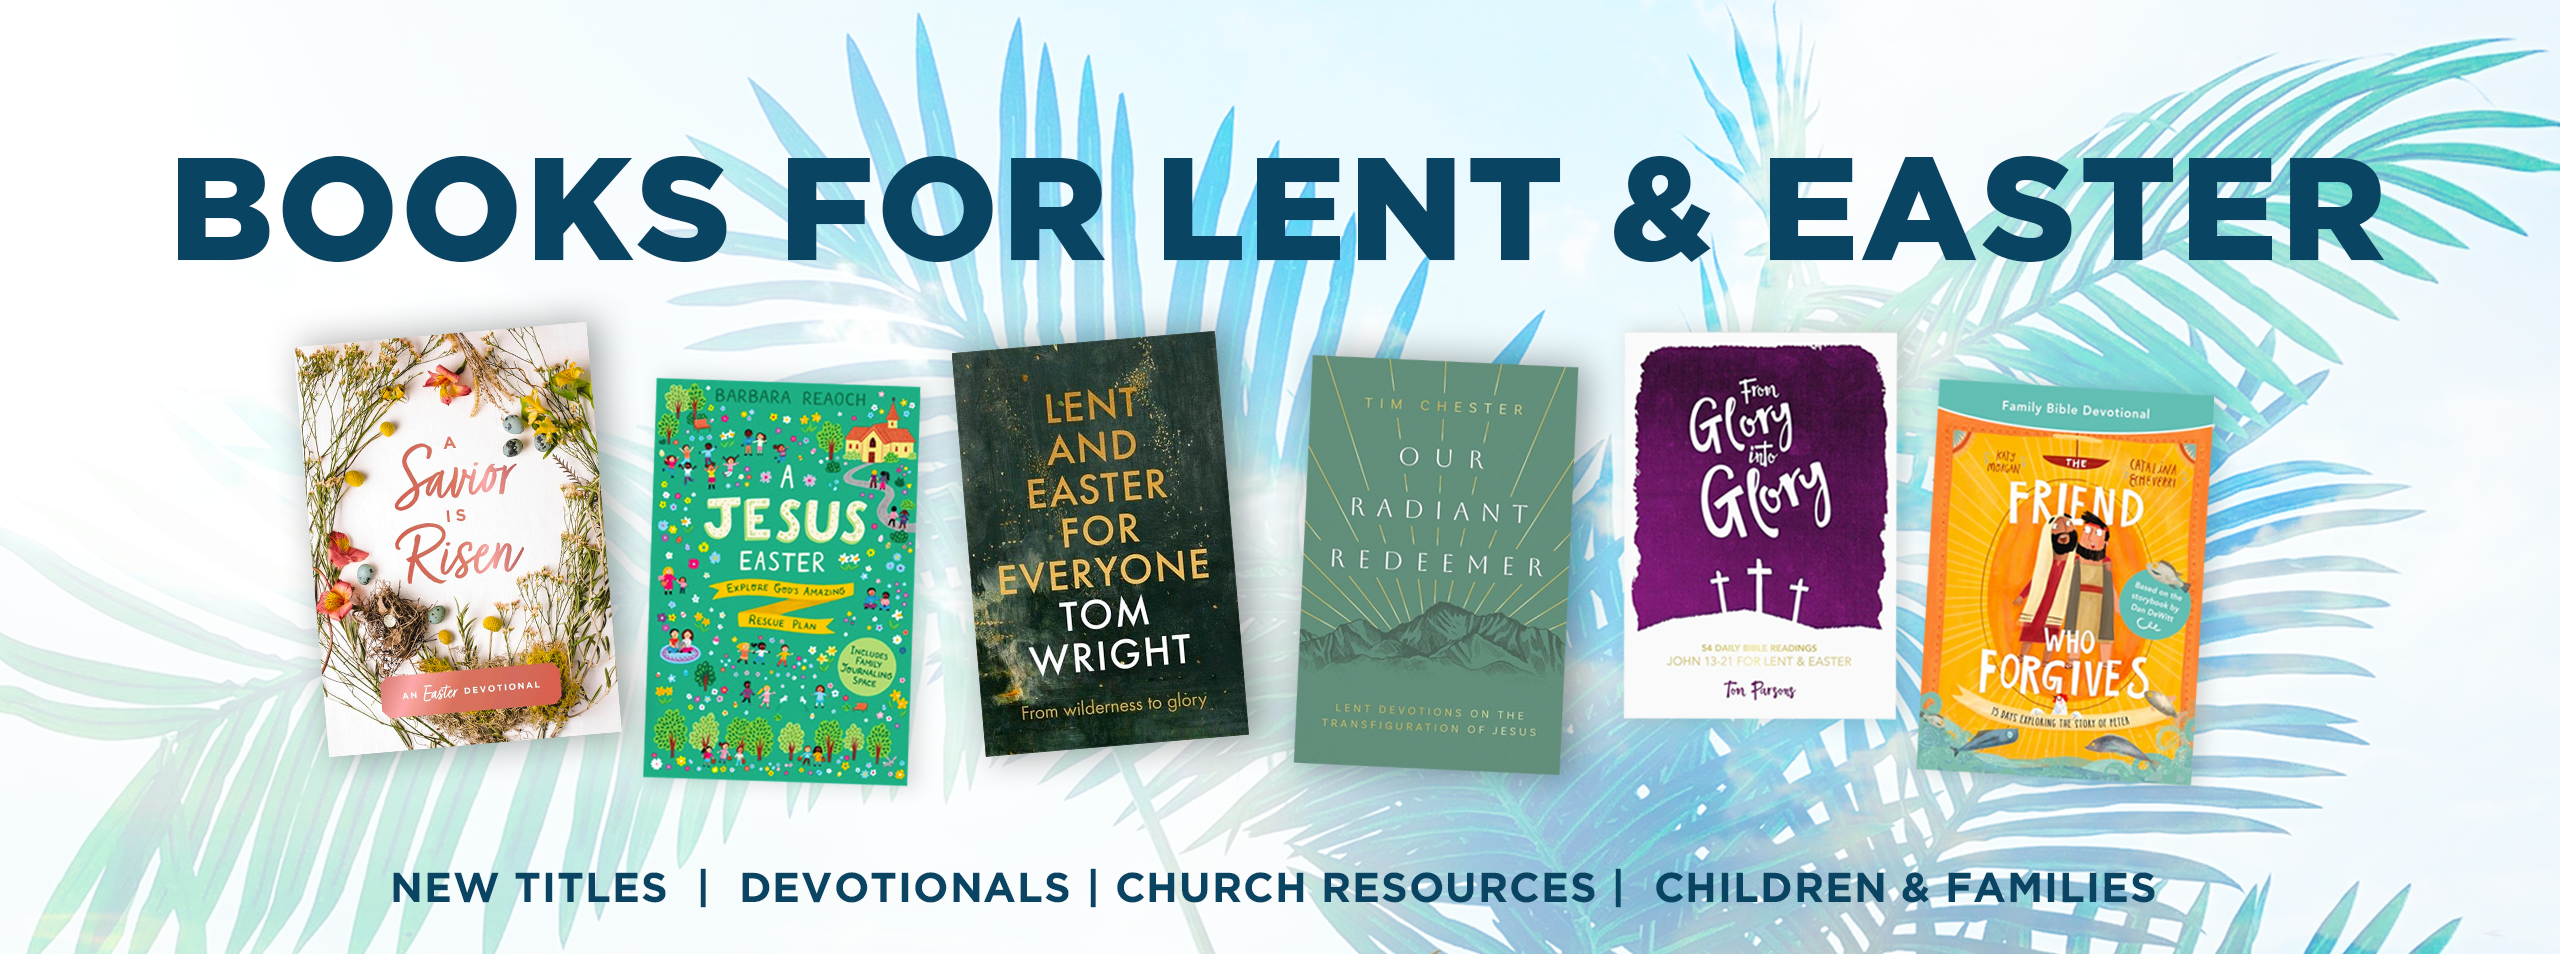 Books for Lent & Easter